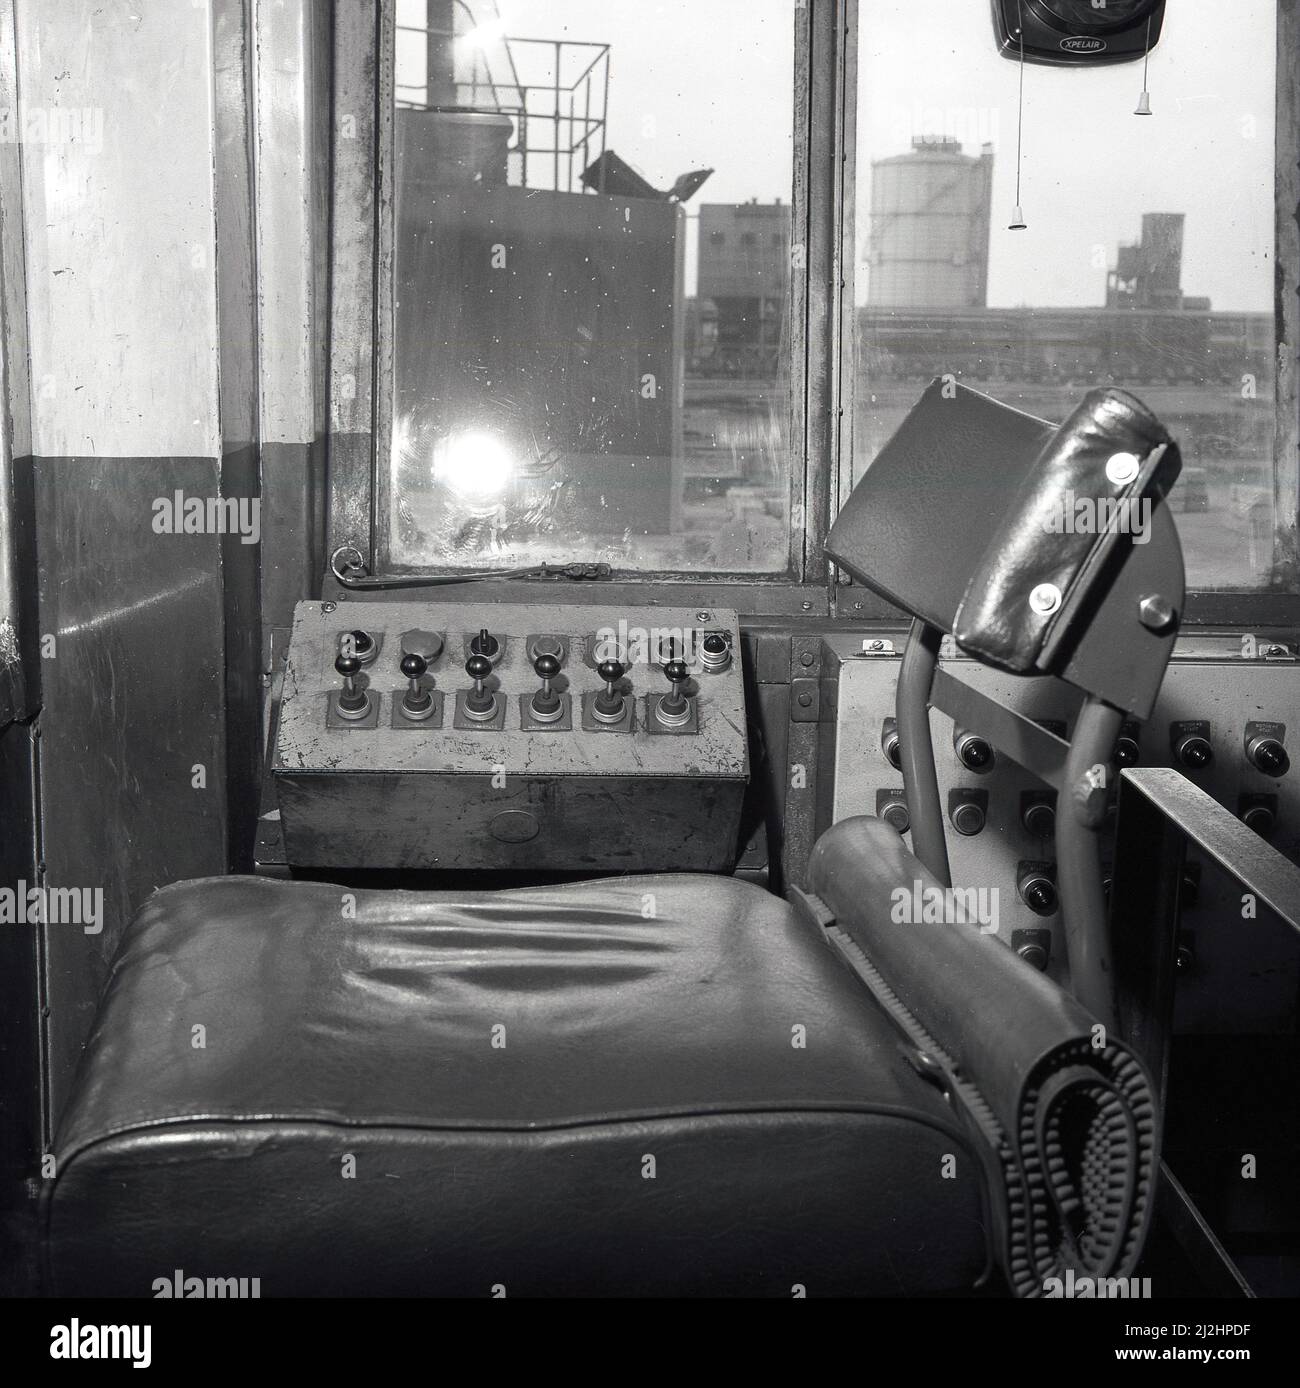 1950s, vue historique et intérieure d'une cabine de grue montrant le siège et les commandes. La grue déplacerait un gros aimant pour mettre de la ferraille d'acier et d'autres métaux jetés dans des wagons de marchandises, usine d'acier d'Abbey Works, Port Talbot, pays de Galles, Royaume-Uni. Banque D'Images